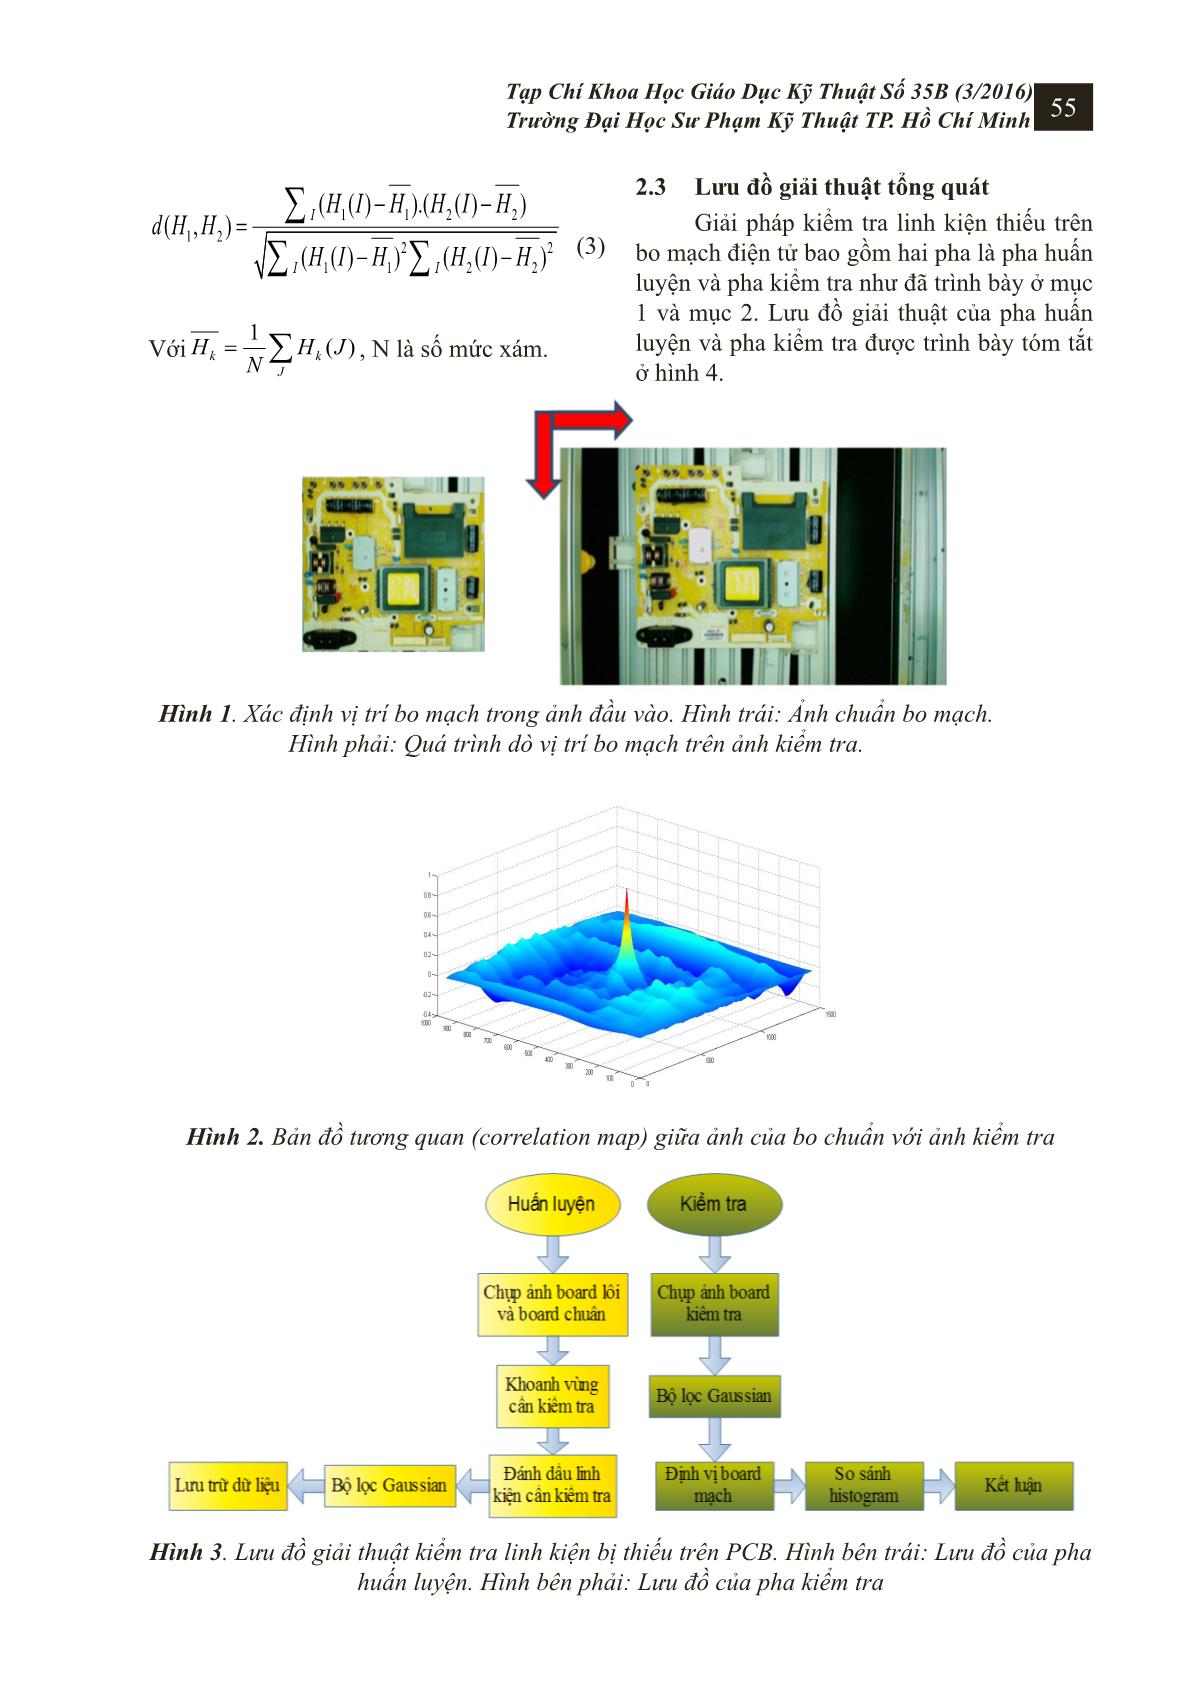 Hệ thống kiểm tra linh kiện trên bo mạch điện tử sử dụng công nghệ xử lý ảnh trang 4